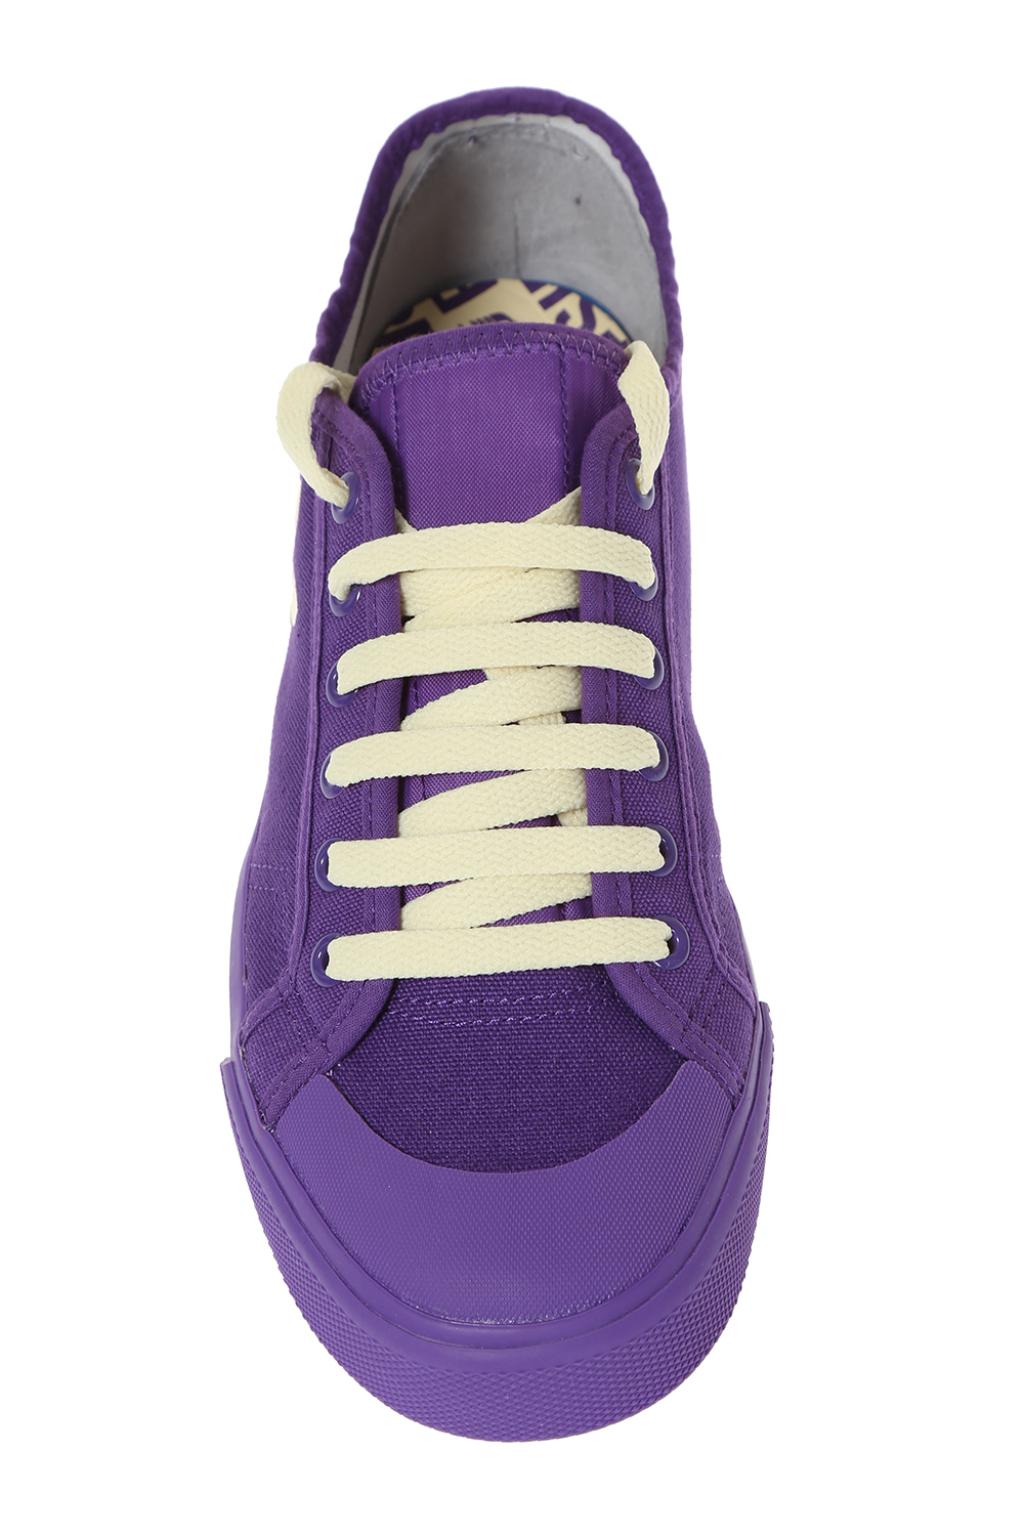 Purple Spirit' sneakers ADIDAS by Simons - Vitkac Italy